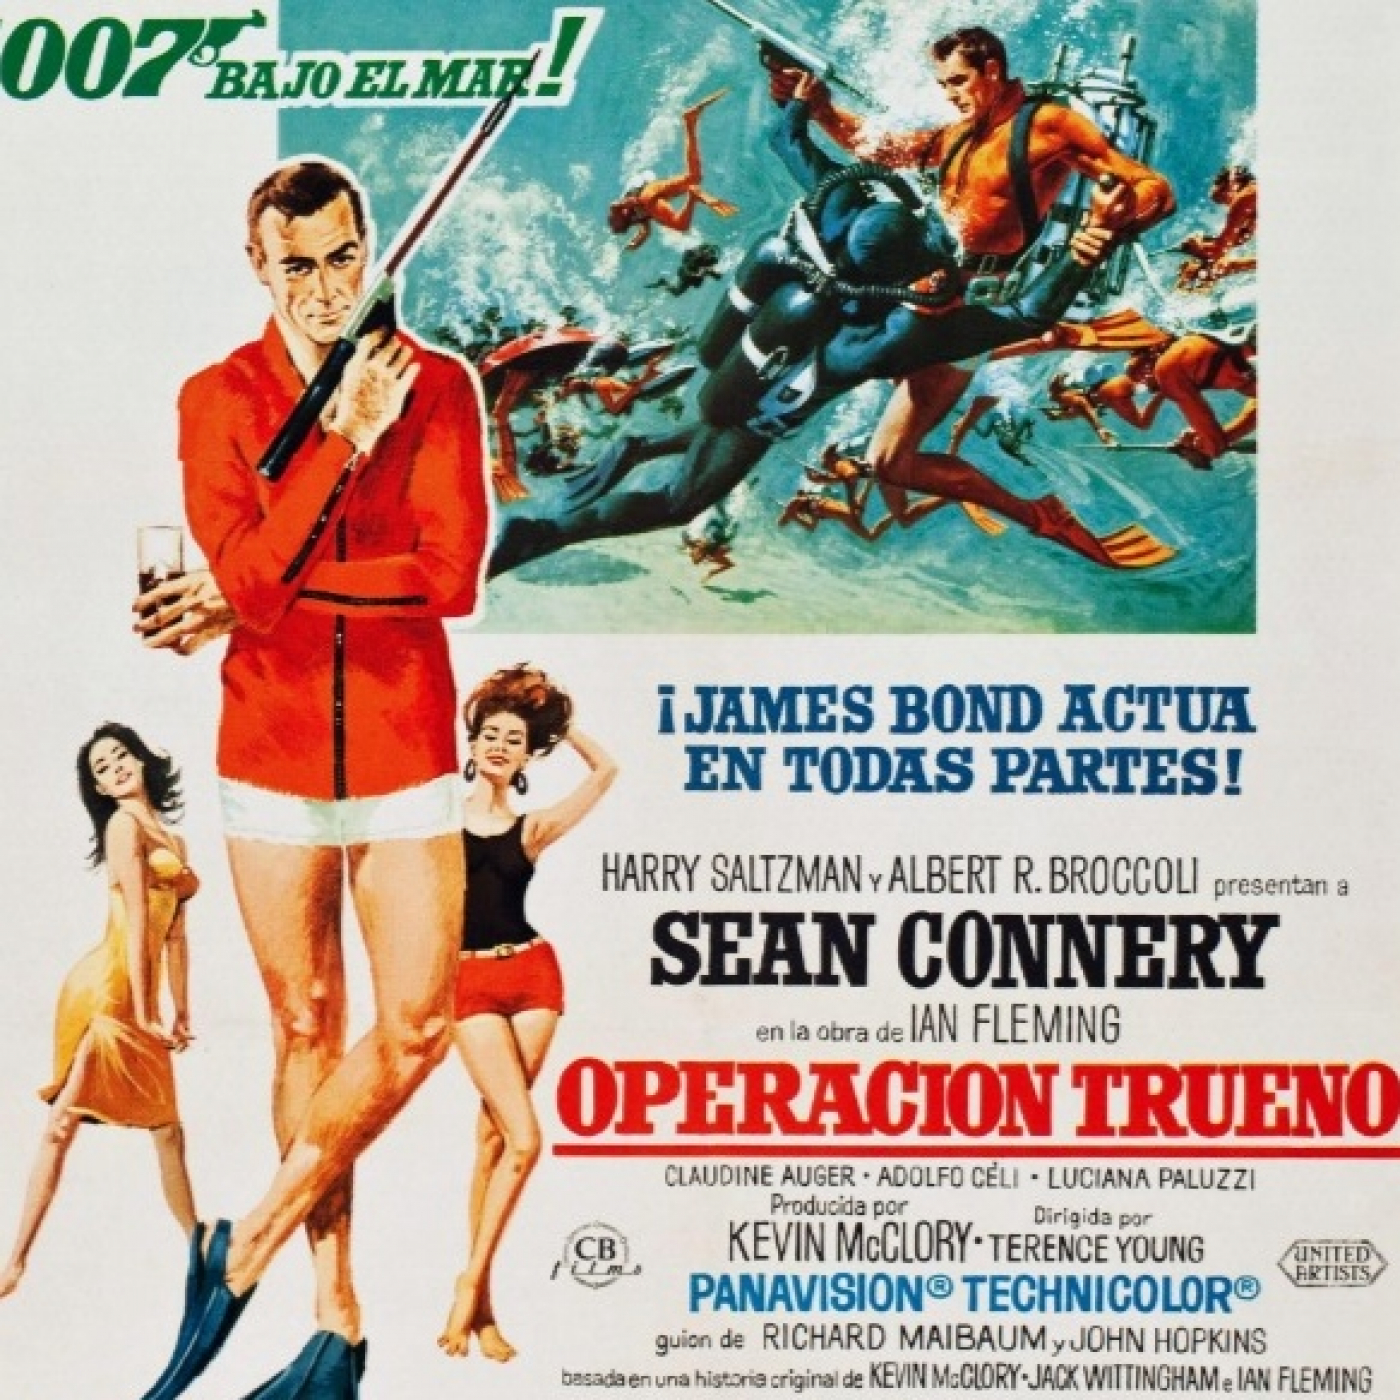 3x01.-Operación trueno - 1965